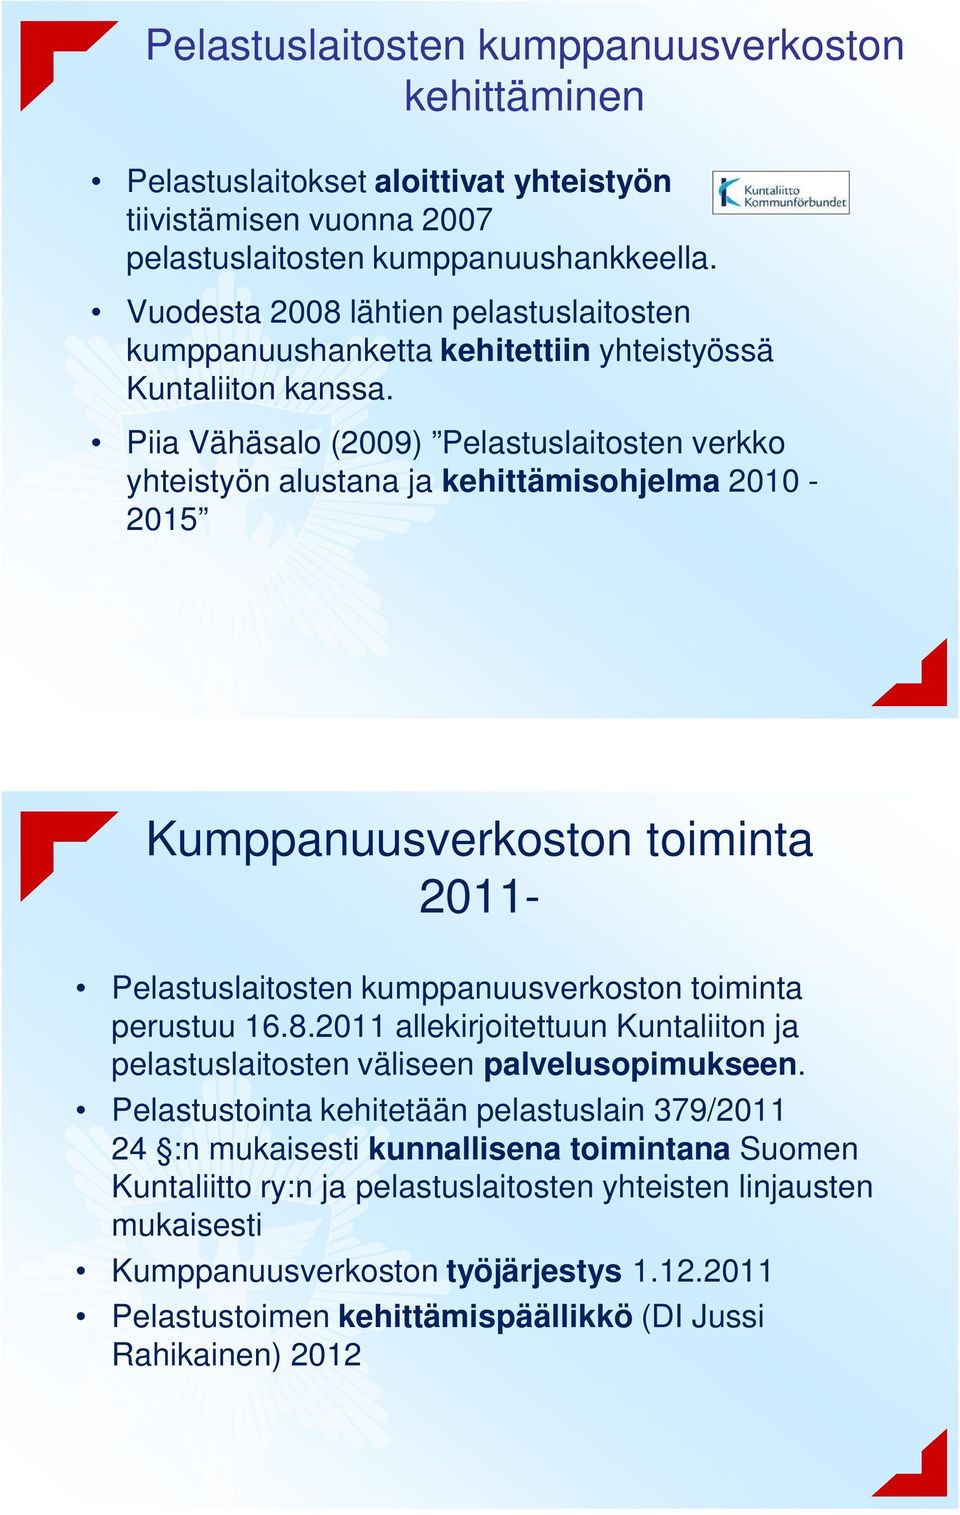 Piia Vähäsalo (2009) Pelastuslaitosten verkko yhteistyön alustana ja kehittämisohjelma 2010-2015 Kumppanuusverkoston toiminta 2011- Pelastuslaitosten kumppanuusverkoston toiminta perustuu 16.8.